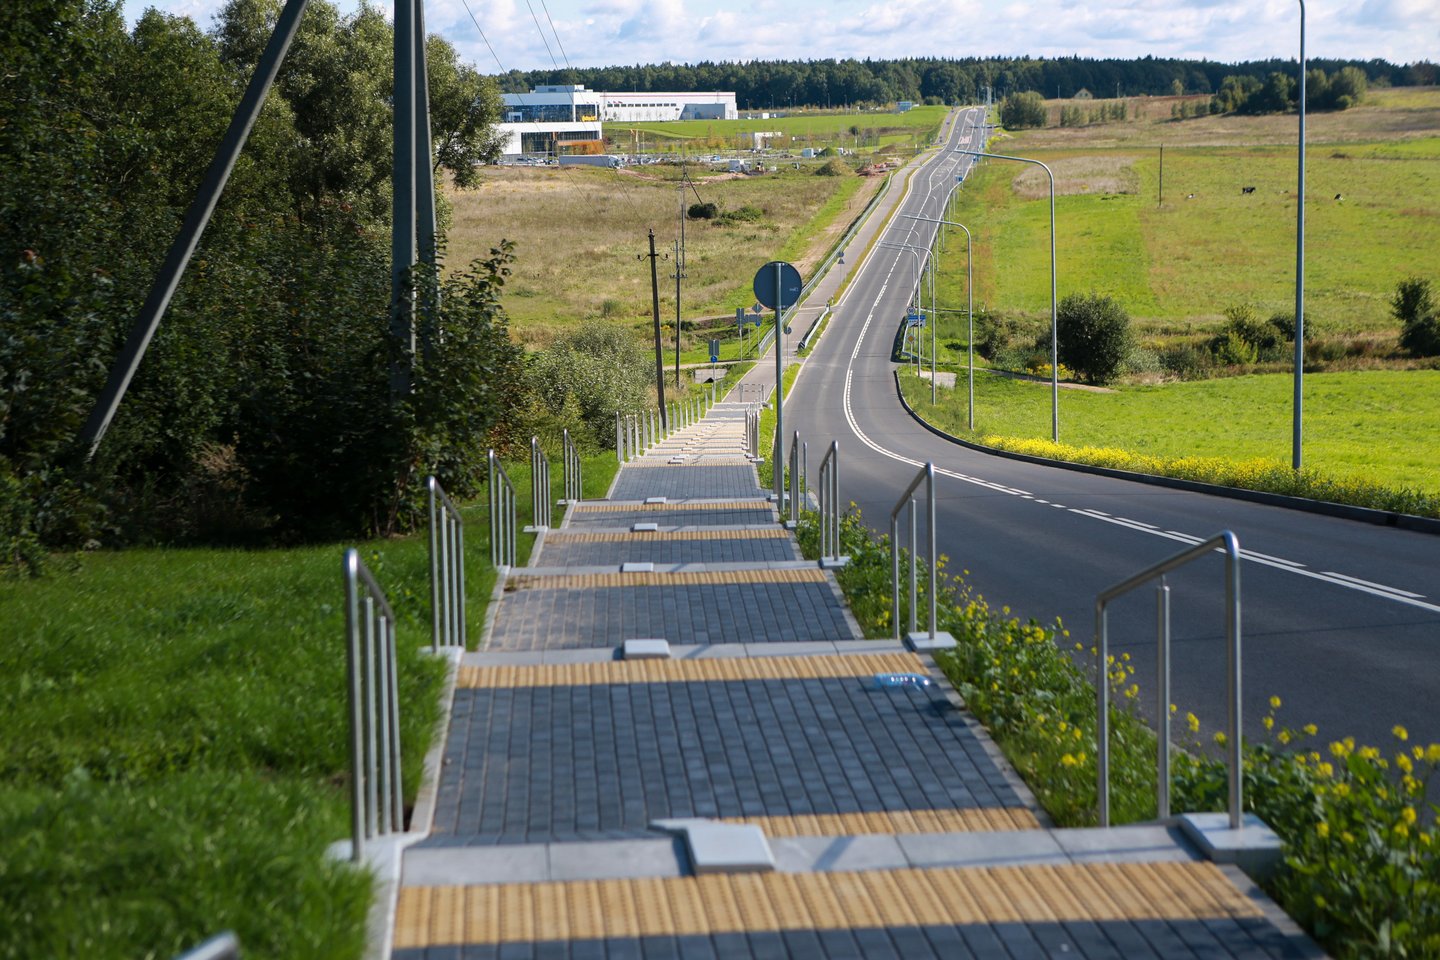 Kitais metais bus atnaujintos Lietuvos pėsčiųjų ir dviračių takų tiesimo rekomendacijos, pasitelkiant geriausia dviračių infrastruktūra garsėjančių Nyderlandų patirtį.<br>G.Bitvinsko nuotr.